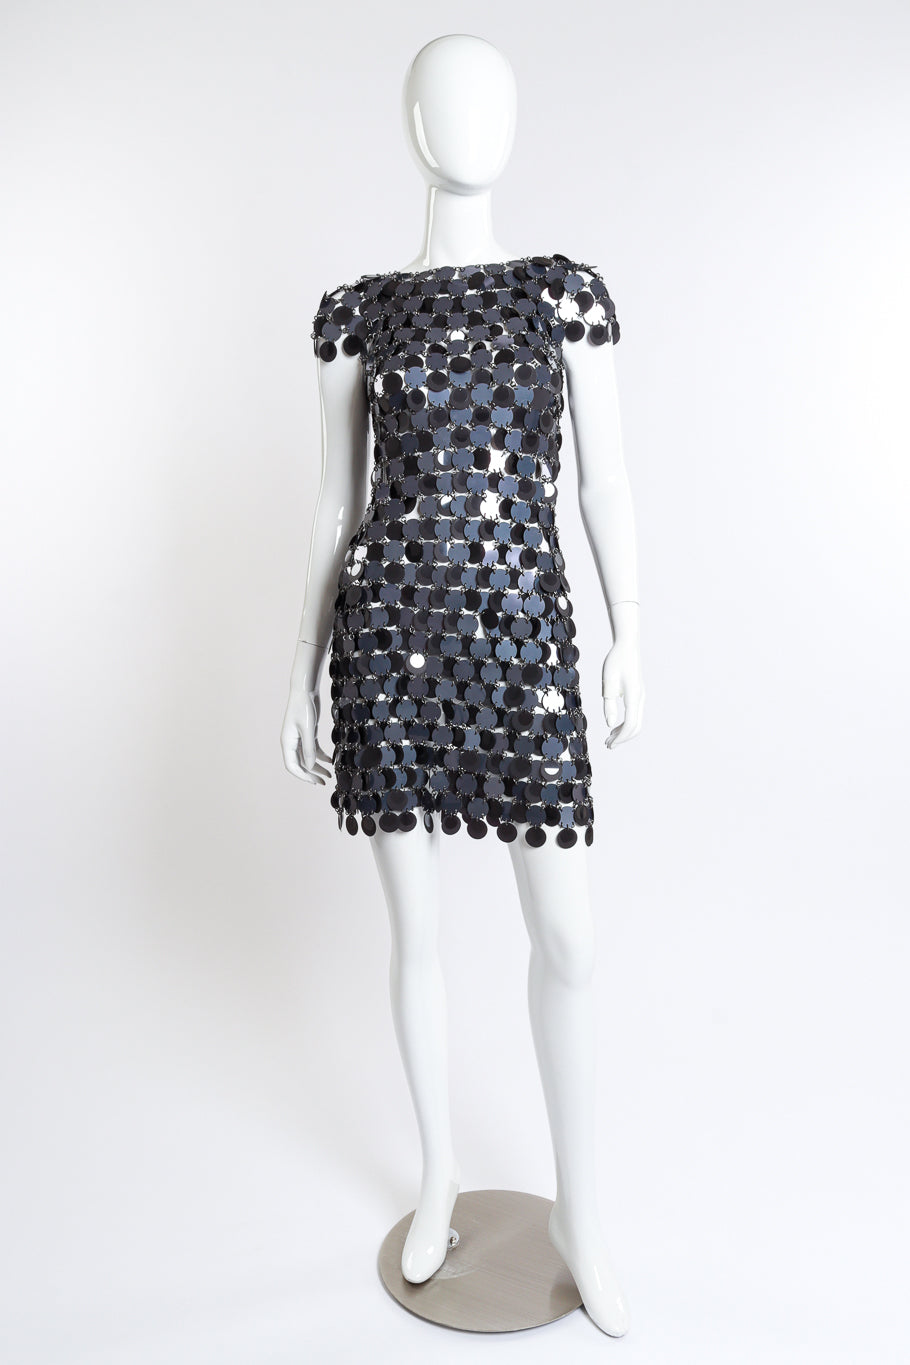 Paco Rabanne Disc Chain Mini Dress front on mannequin @recess la